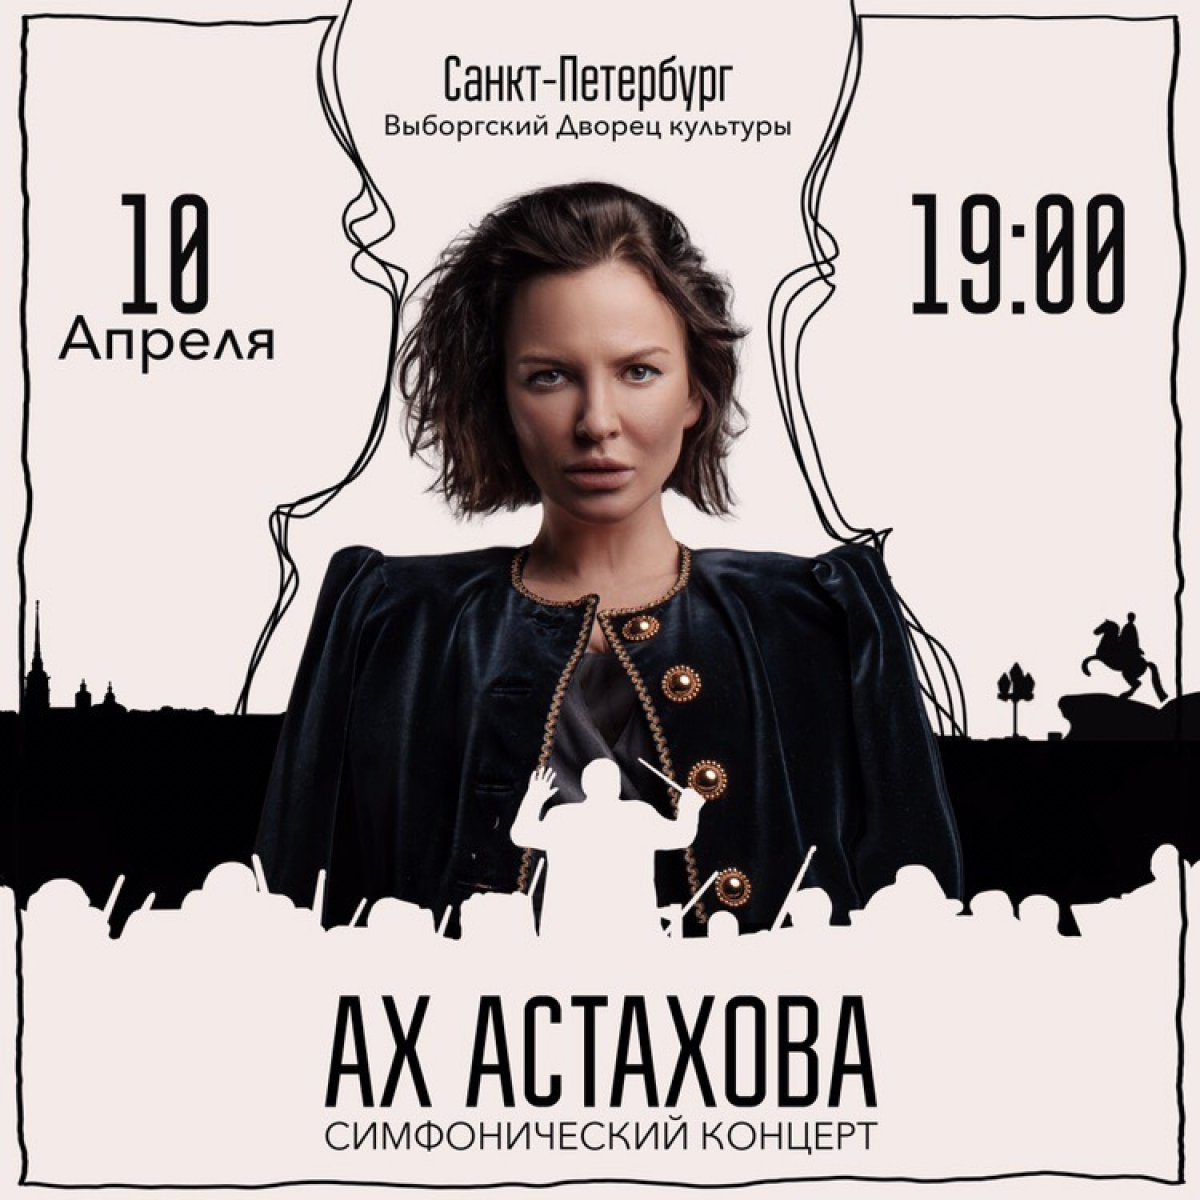 А вот и результаты нашего розыгрыша билетов на концерт Ах Астаховой 10 апреля в Санкт-Петербурге. Билеты получают Аня Лагутина